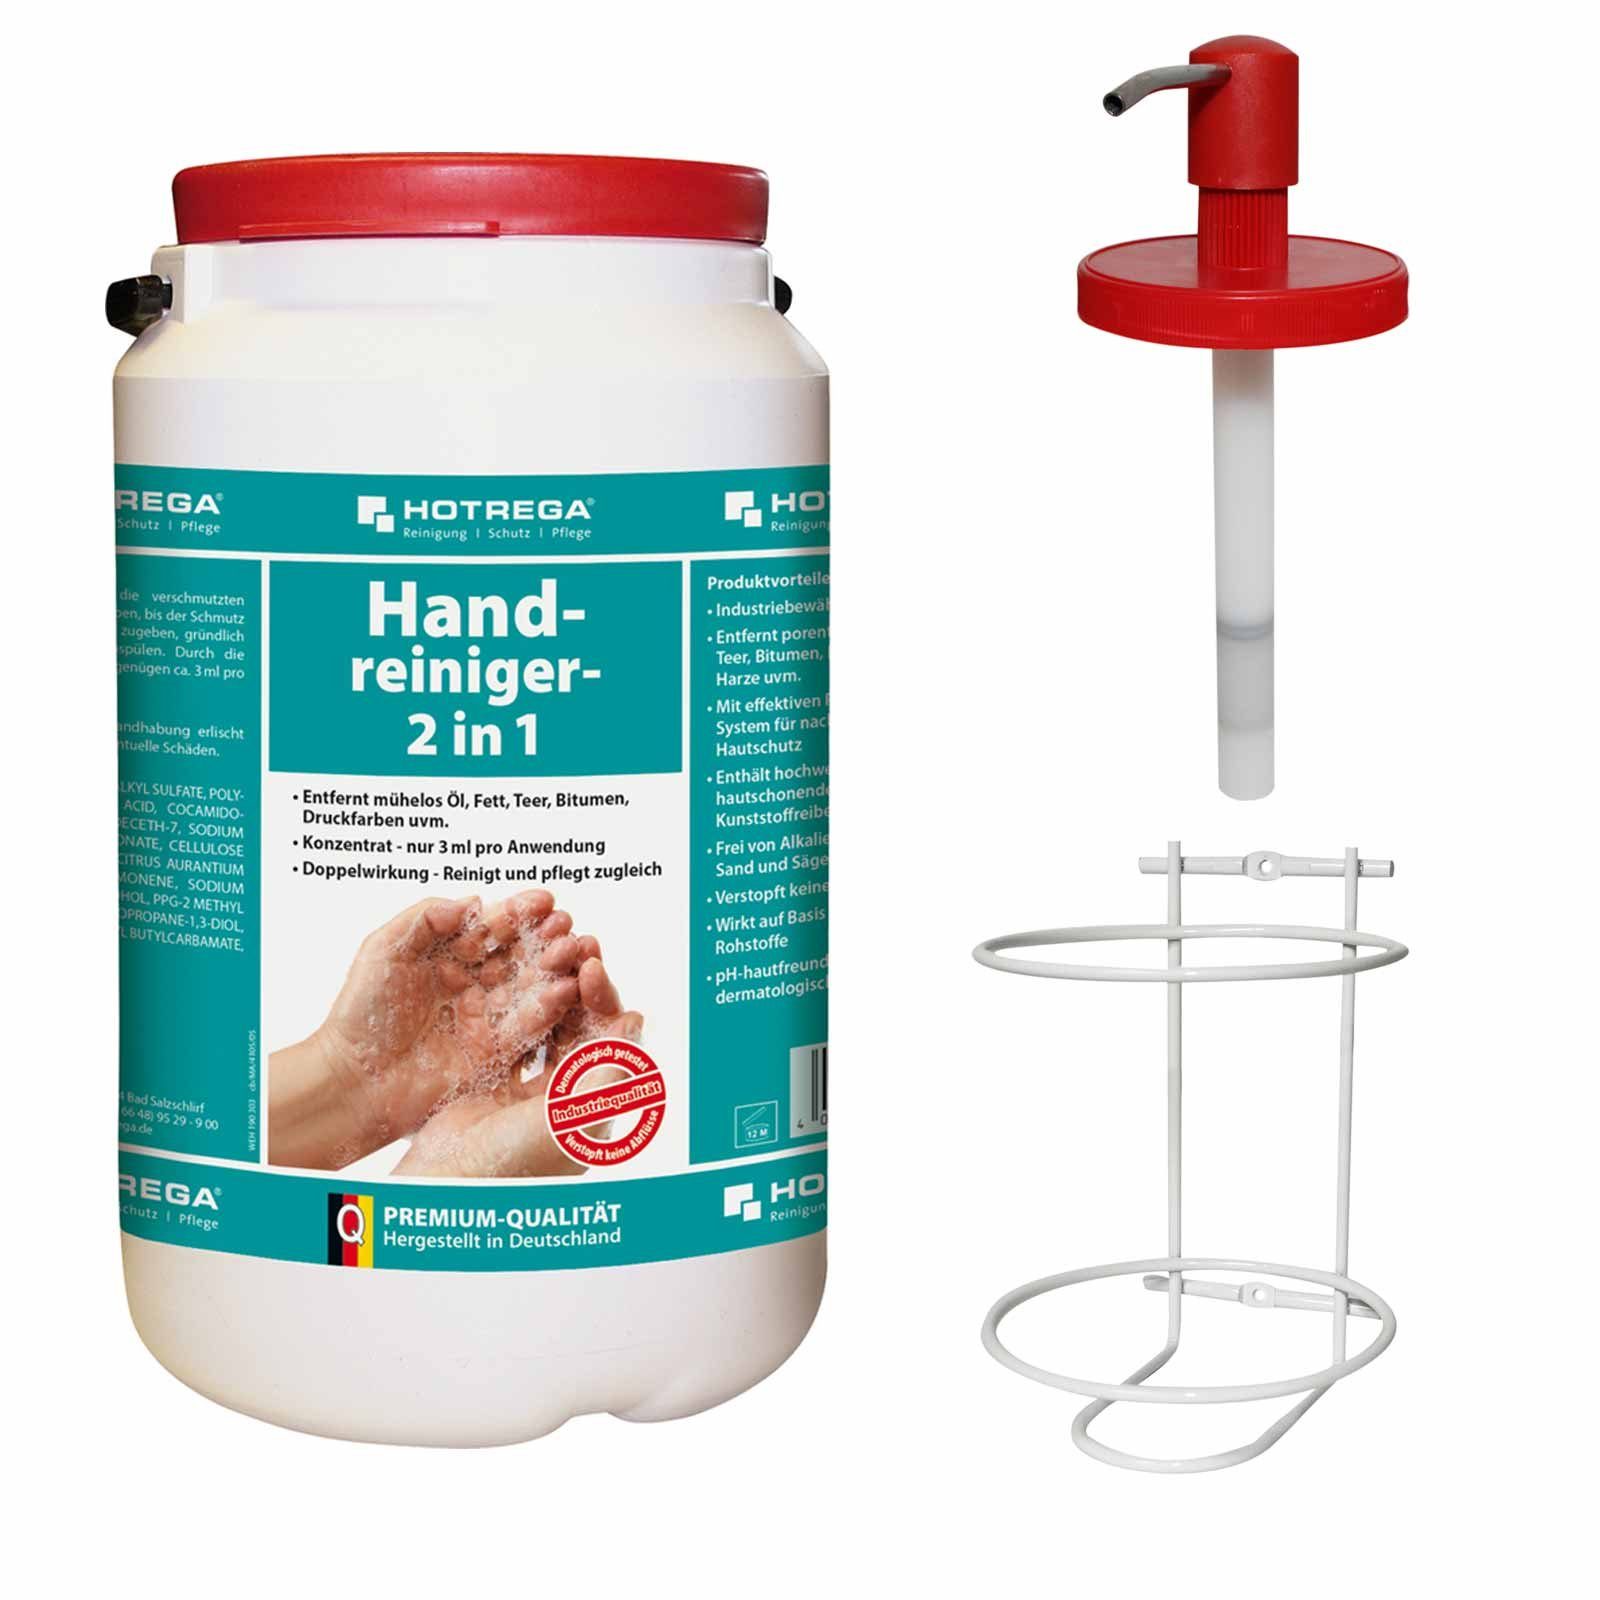 3L Handcreme 2in1 Handpflege Hautpflege Hautreiniger Dosiersystem Handreiniger + HOTREGA®